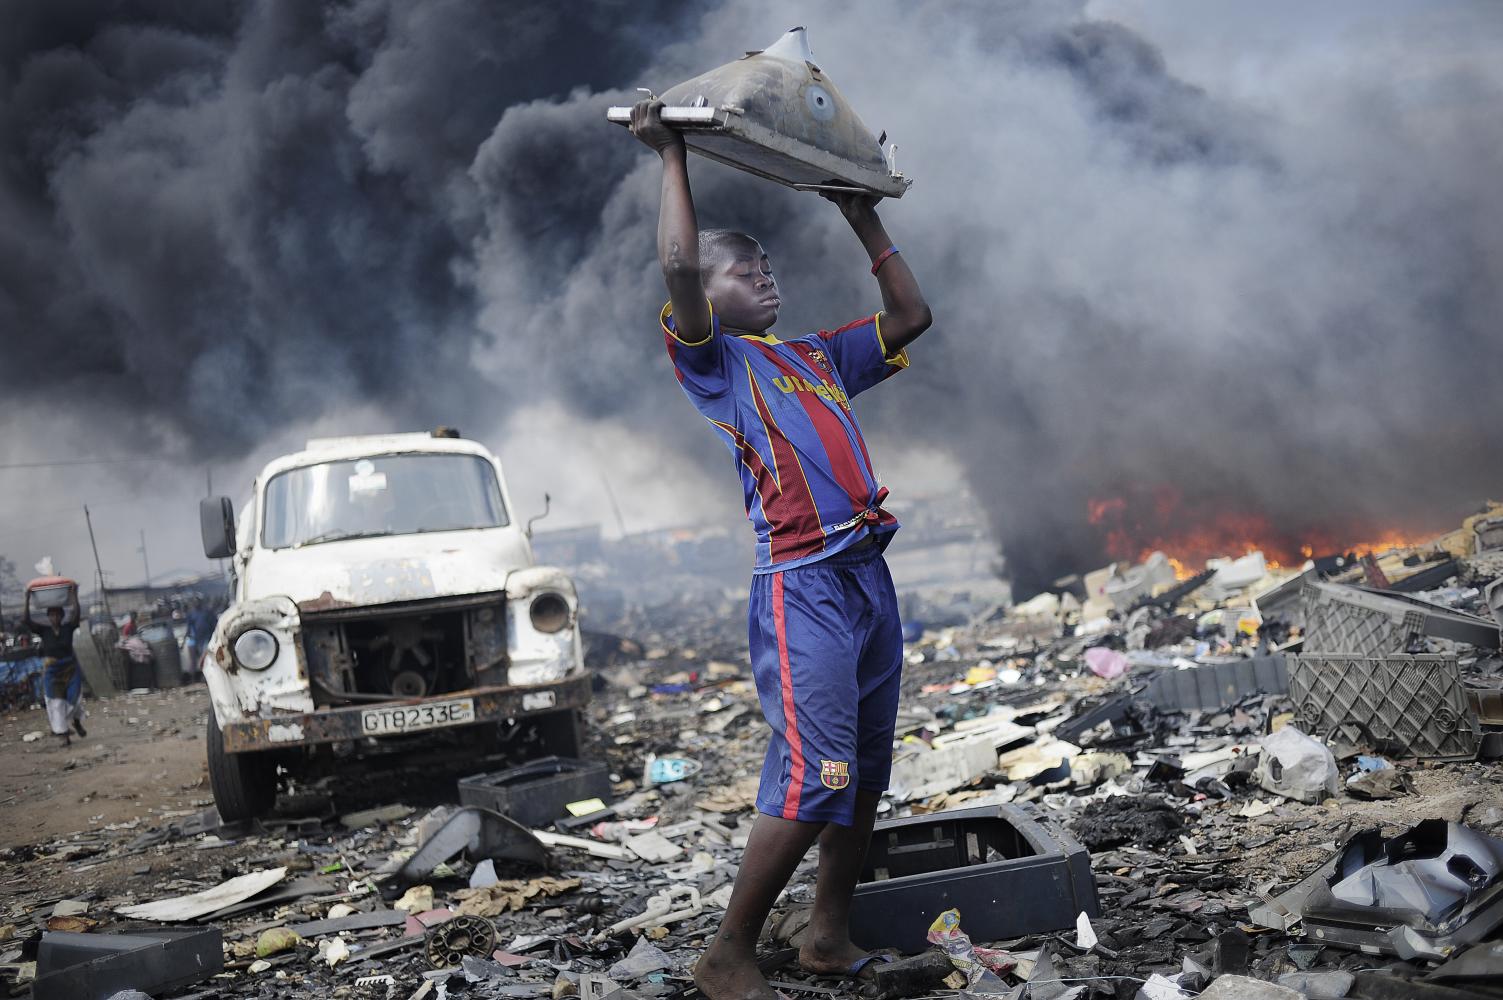 Kai Löffelbein, Afrika, Ghana, Accra, Agbogbloshie, 20.09.2011: Ein Junge wirft einen Fernseher mehrere Male auf den Boden, um an das Metall zu kommen. Im Hintergrund werden Reifen verbrannt